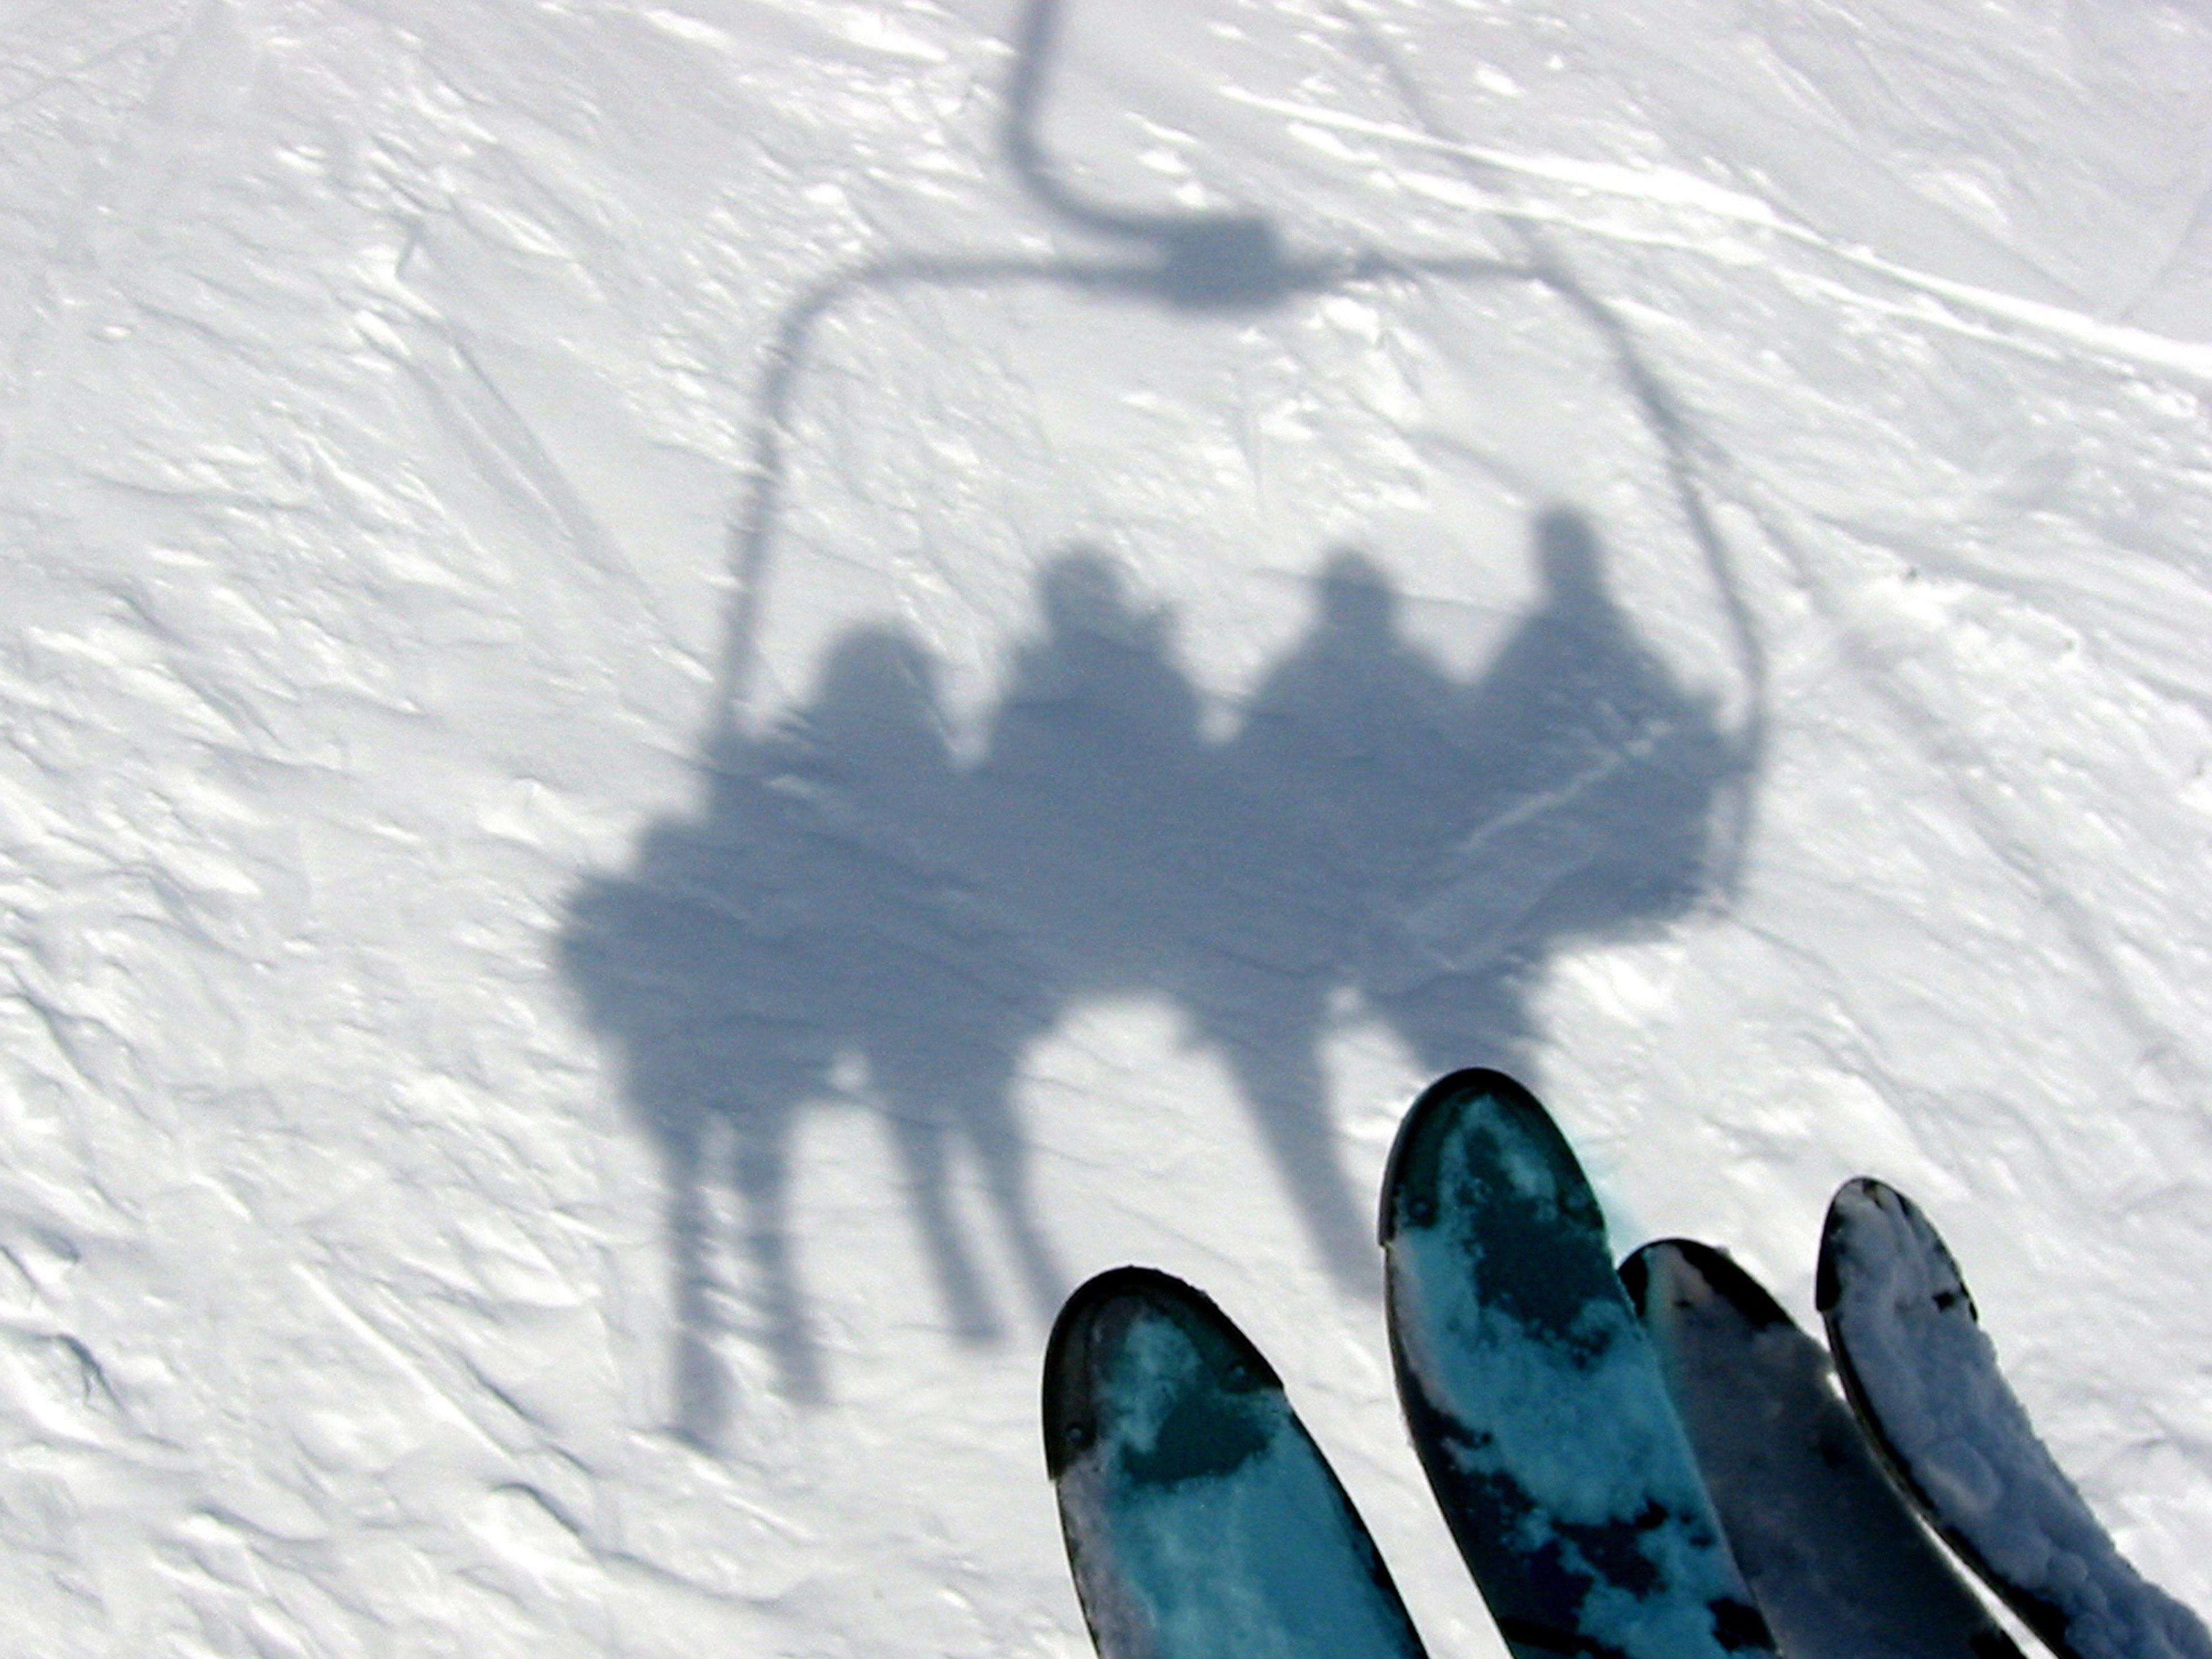 Am Beginn der Skisaison überschätzen viele Wintersportler ihr Können.